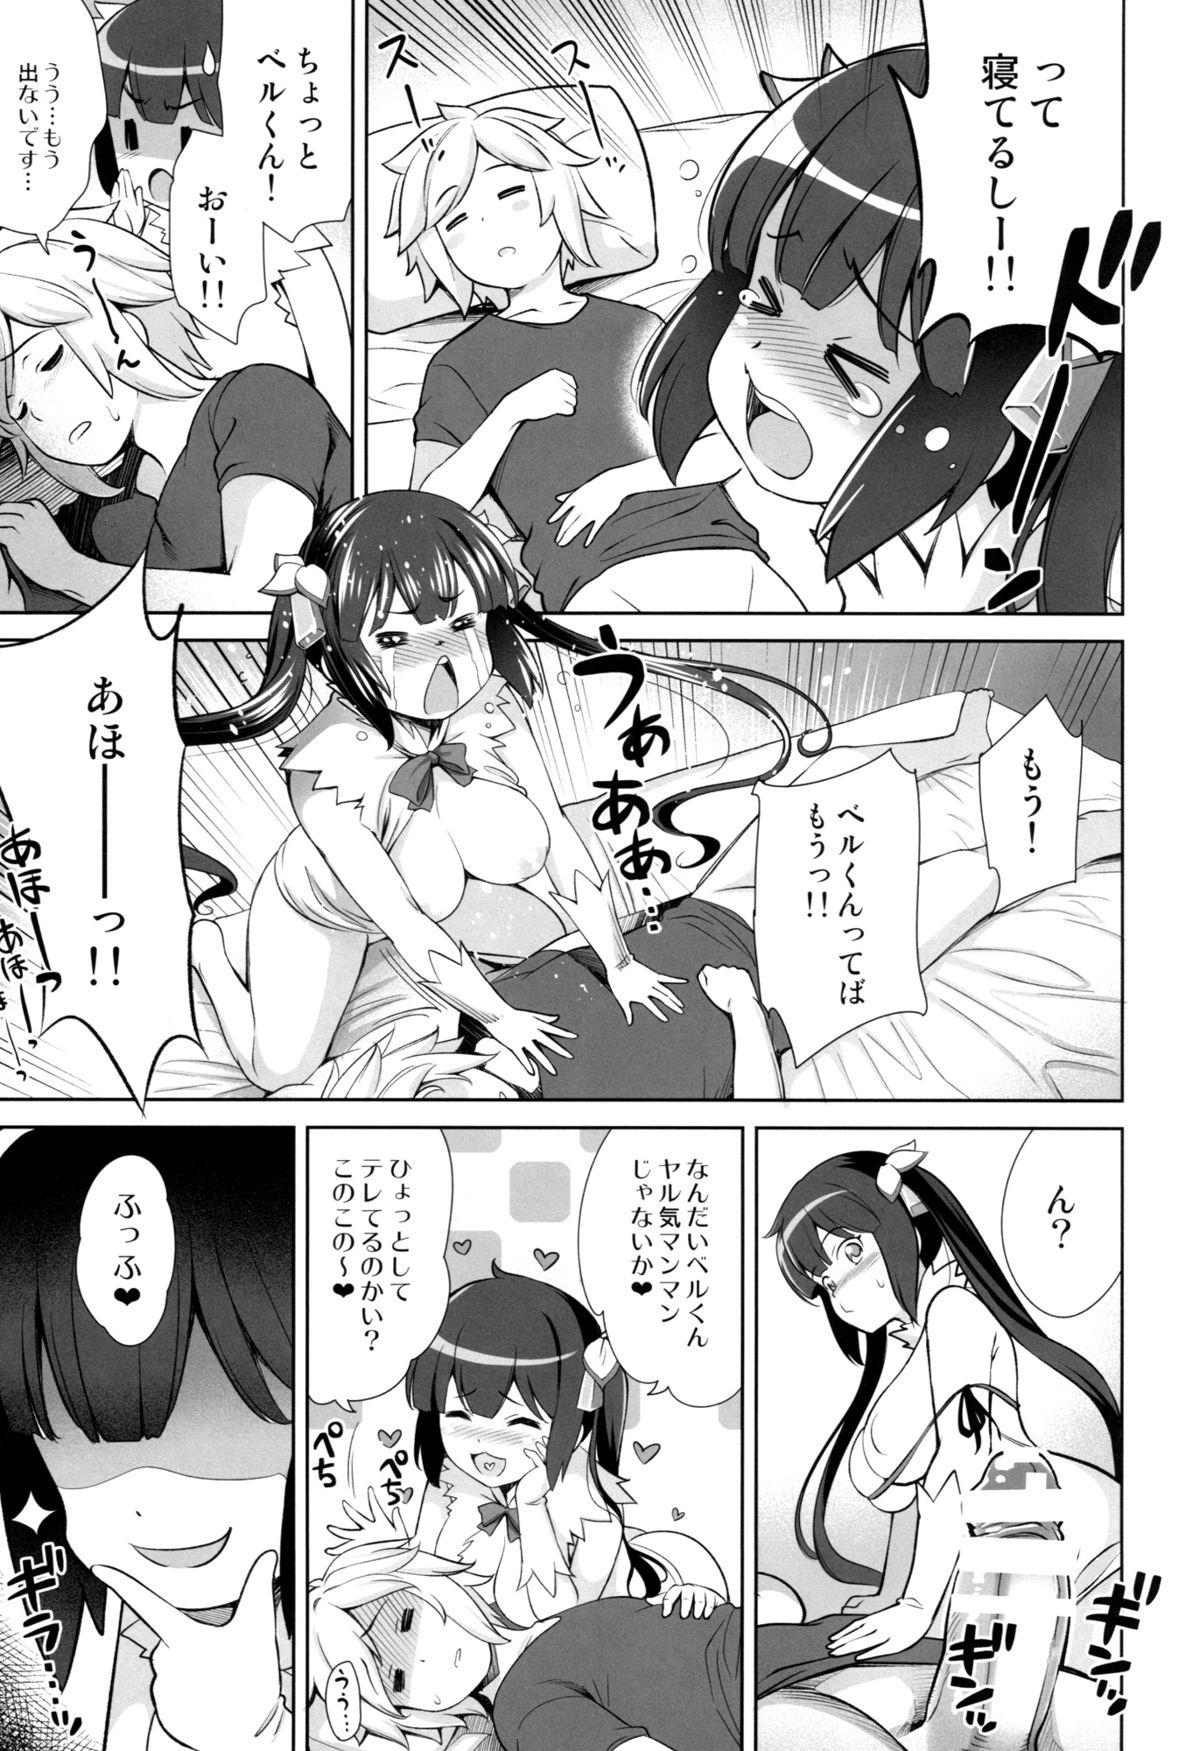 She Rei no Kami - Dungeon ni deai o motomeru no wa machigatteiru darou ka Pickup - Page 10